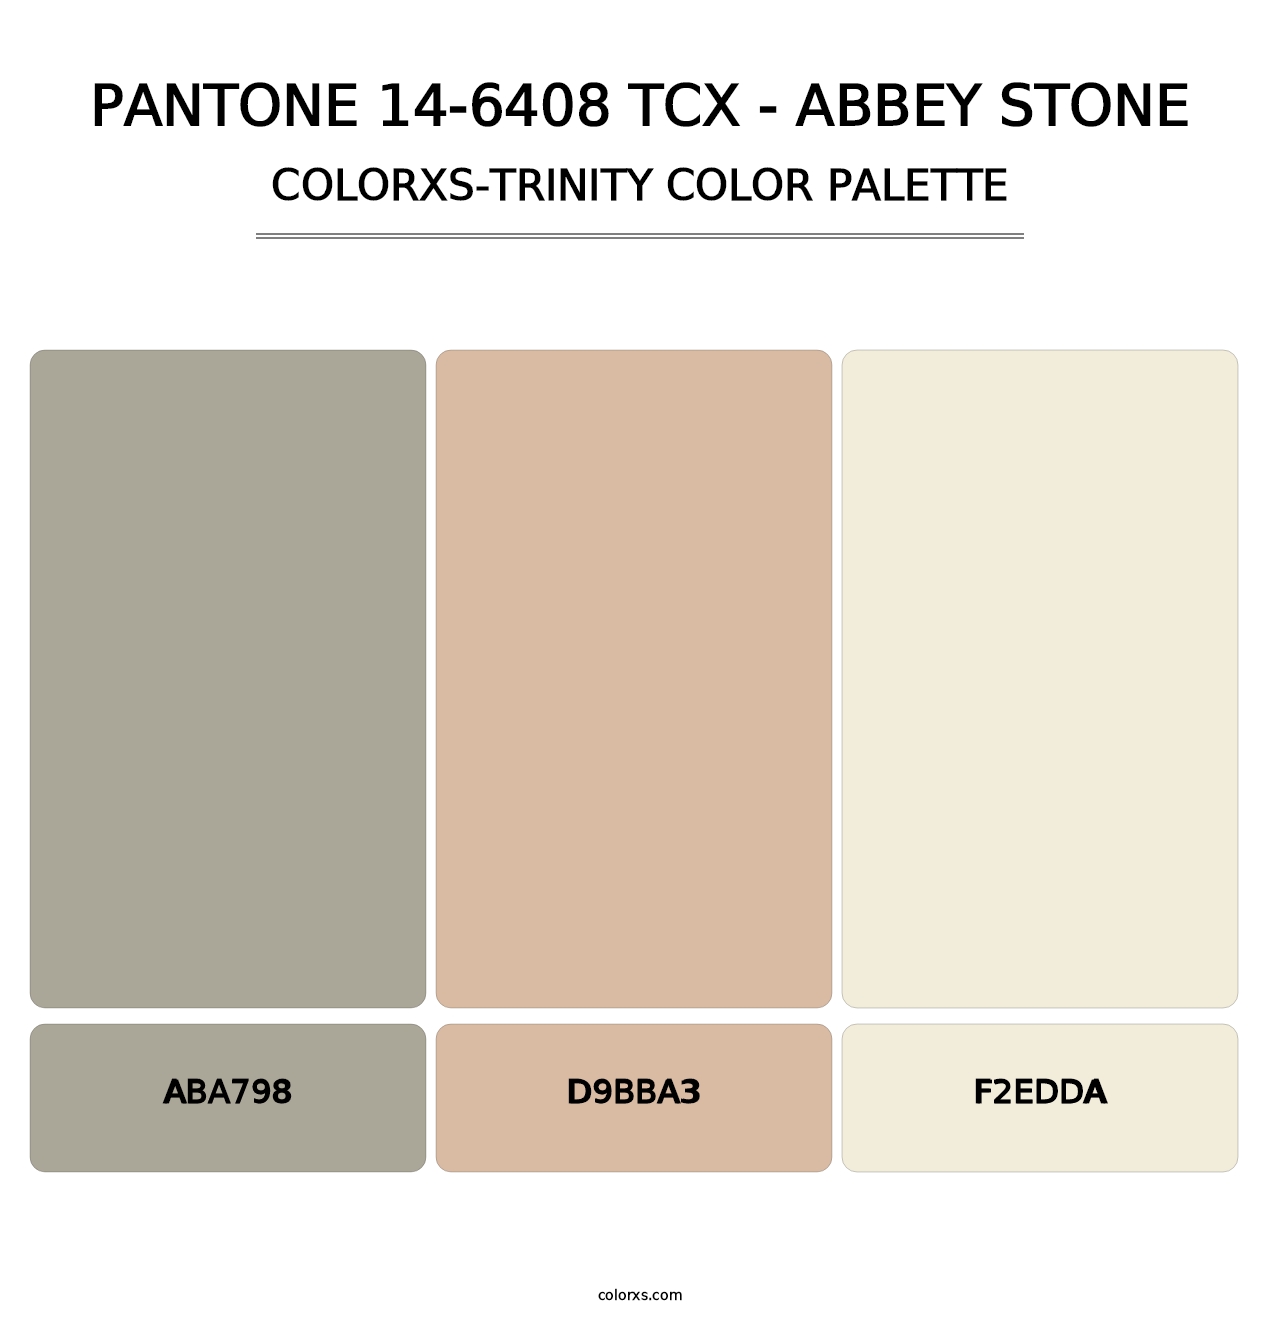 PANTONE 14-6408 TCX - Abbey Stone - Colorxs Trinity Palette